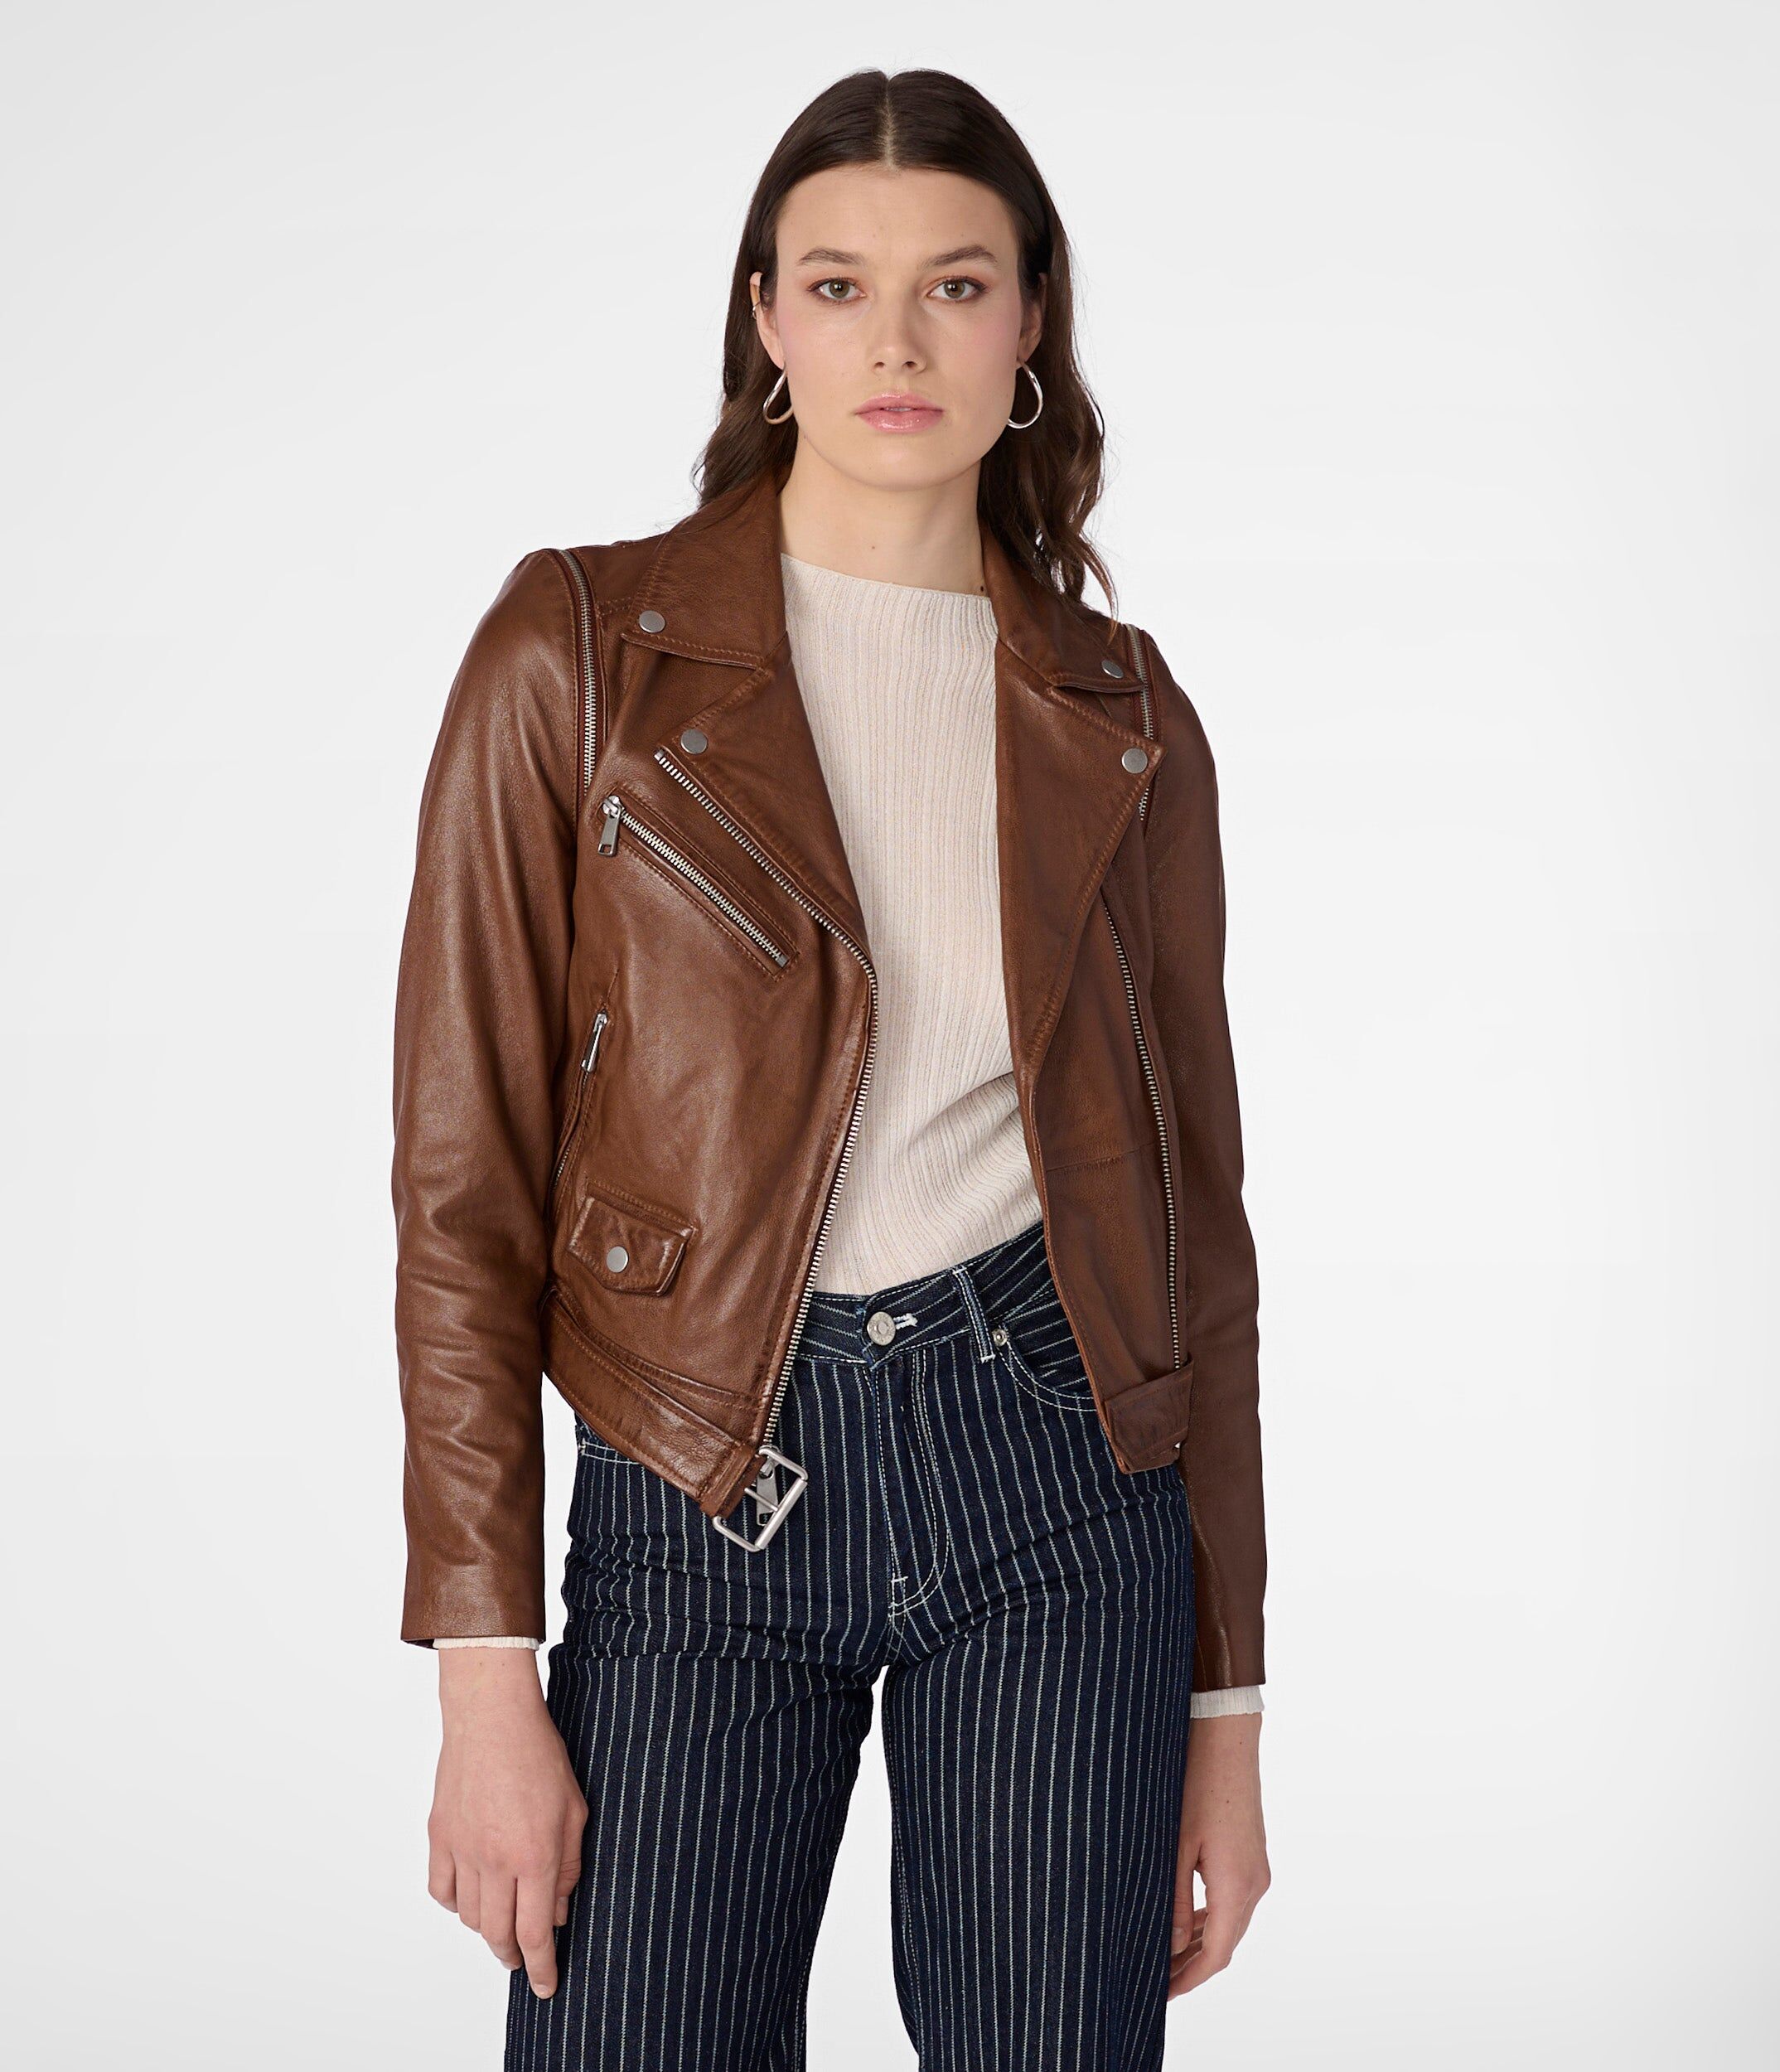 Wilsons Leather   Women's Camila Covertible 2 in 1 Vest Moto Jacket   Cognac   Medium